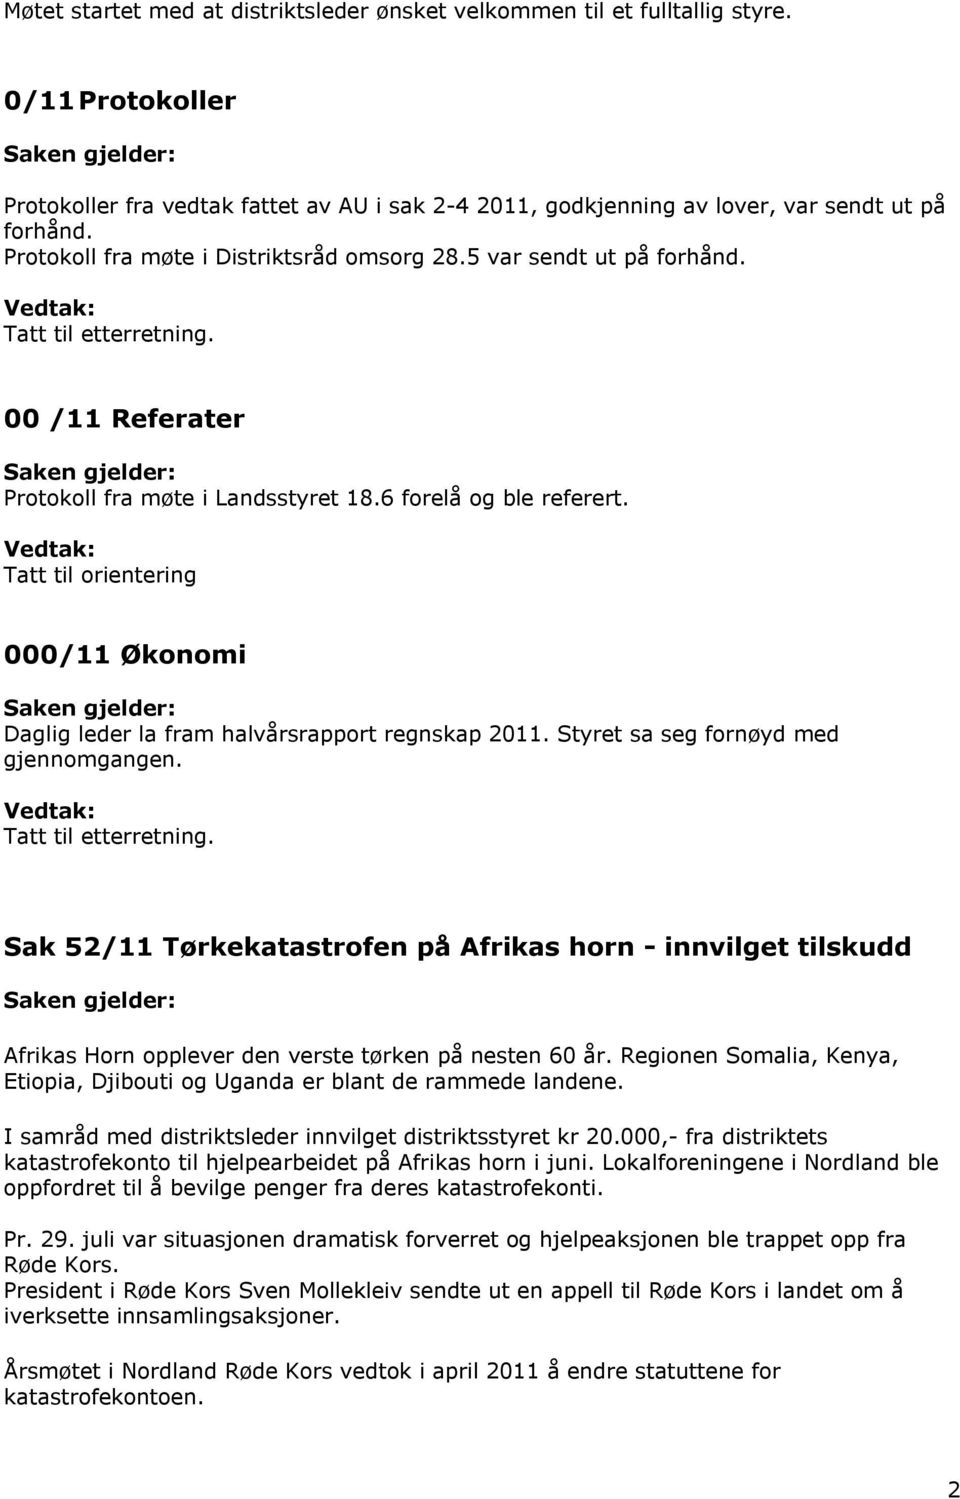 Tatt til orientering 000/11 Økonomi Daglig leder la fram halvårsrapport regnskap 2011. Styret sa seg fornøyd med gjennomgangen. Tatt til etterretning.